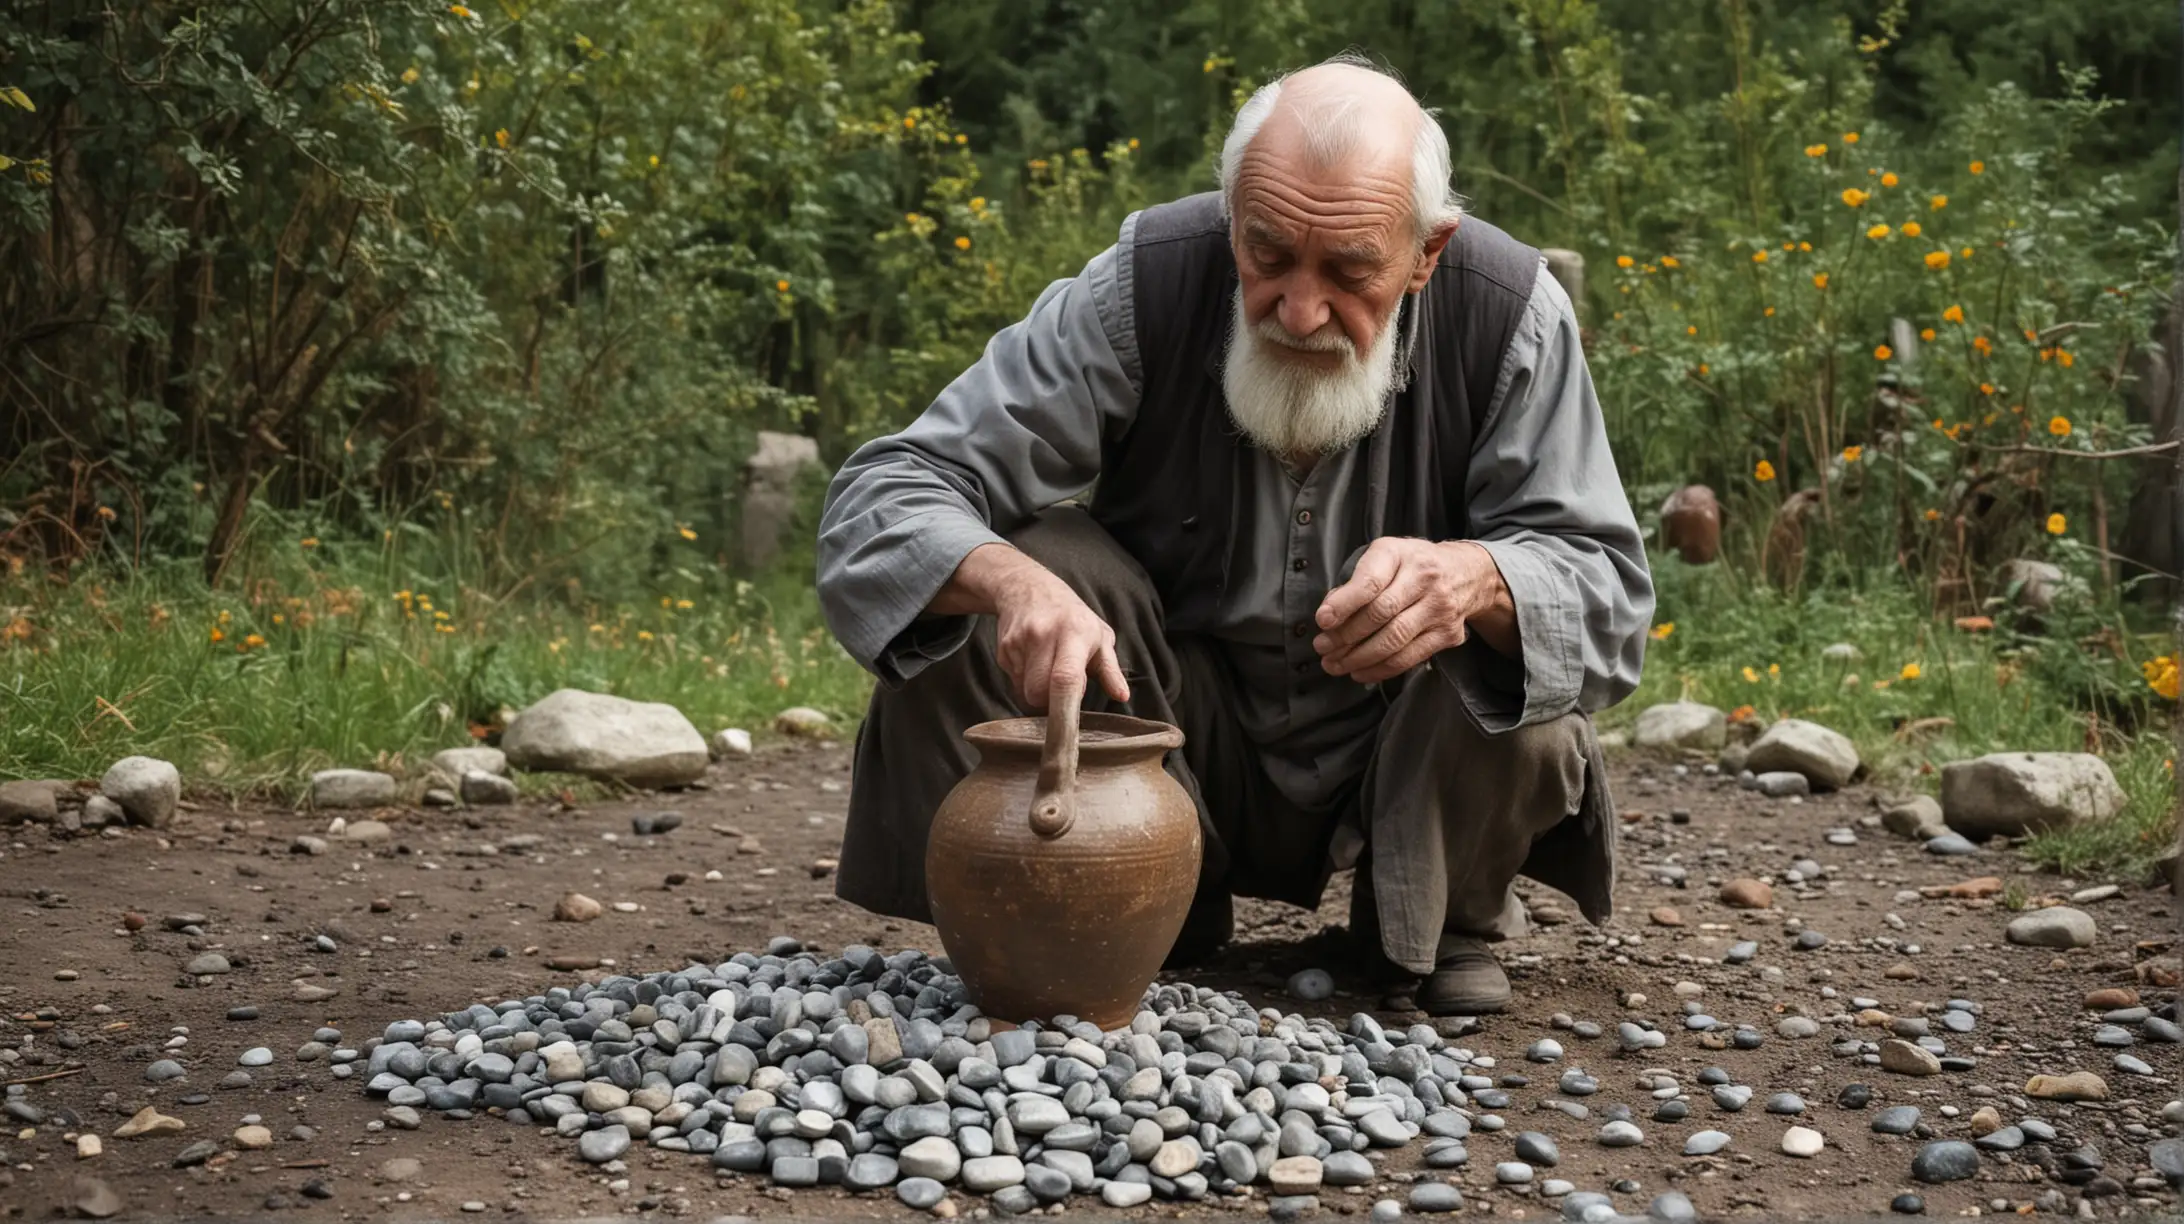 Мудрый старец насыпает мелкие камни, в кувшин заполненный до краёв большими камнями